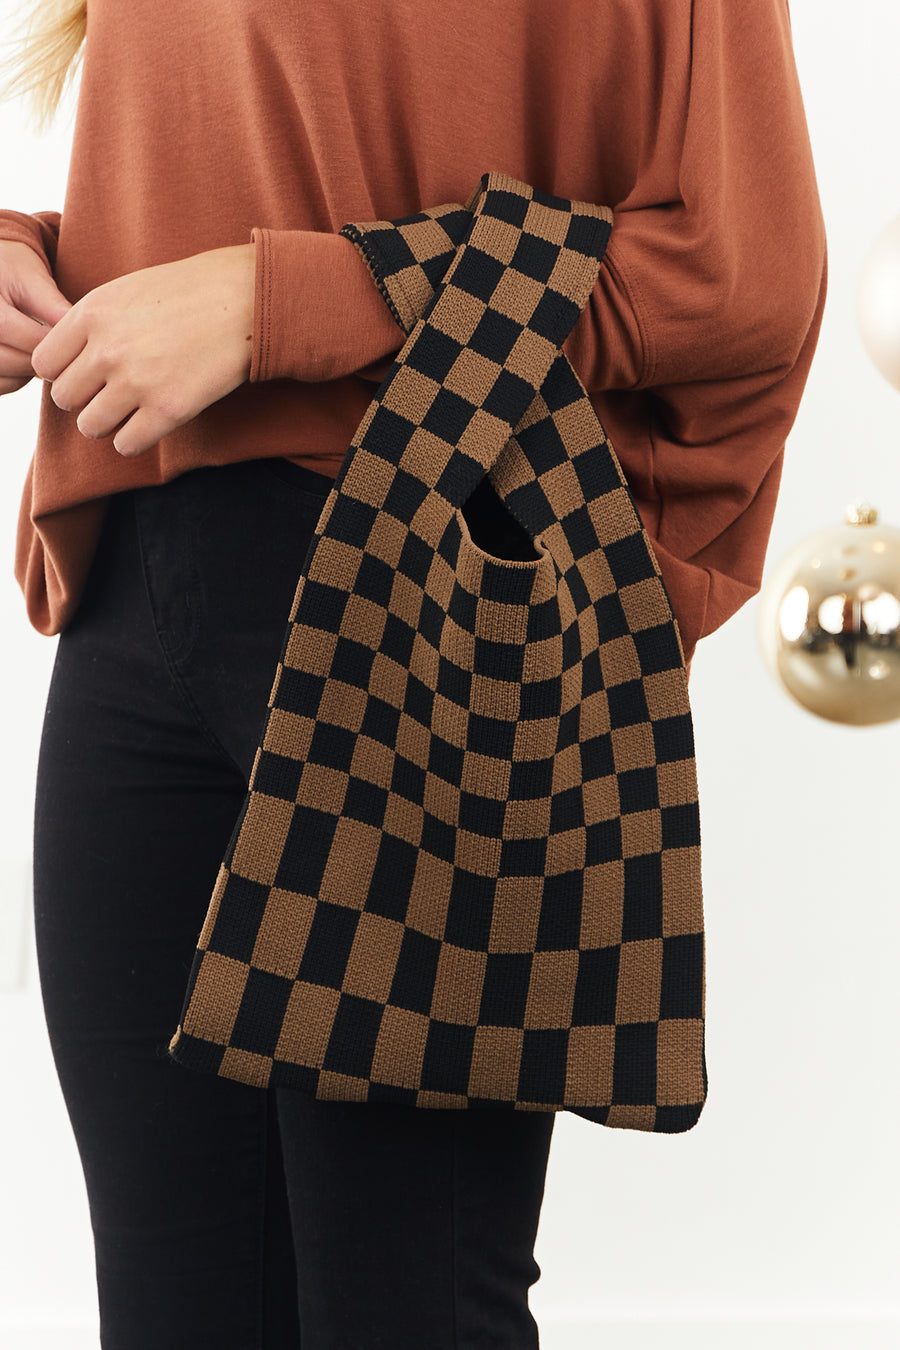 Black and Cocoa Checkered Knit Handbag